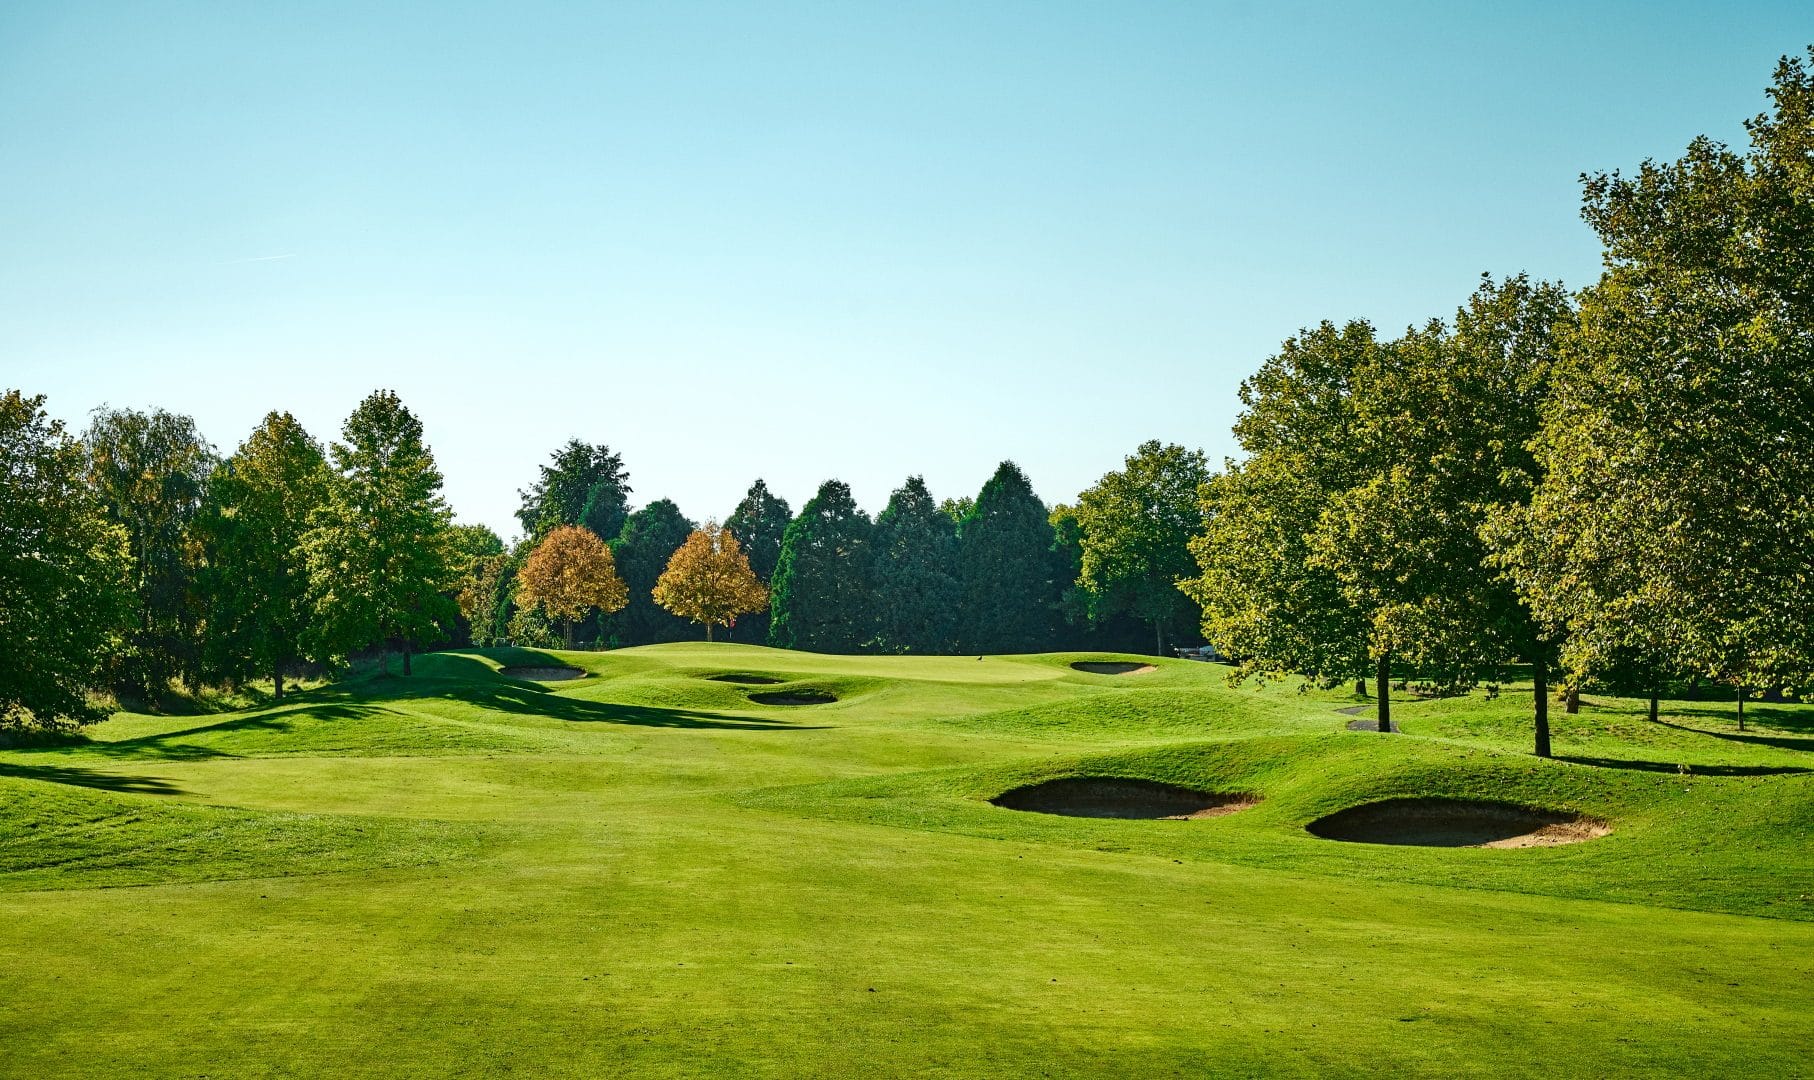 Golf à Magny-le-Hongre (77), golf près de Paris, Golf Paris Val d'Europe, Resonance Golf Collection